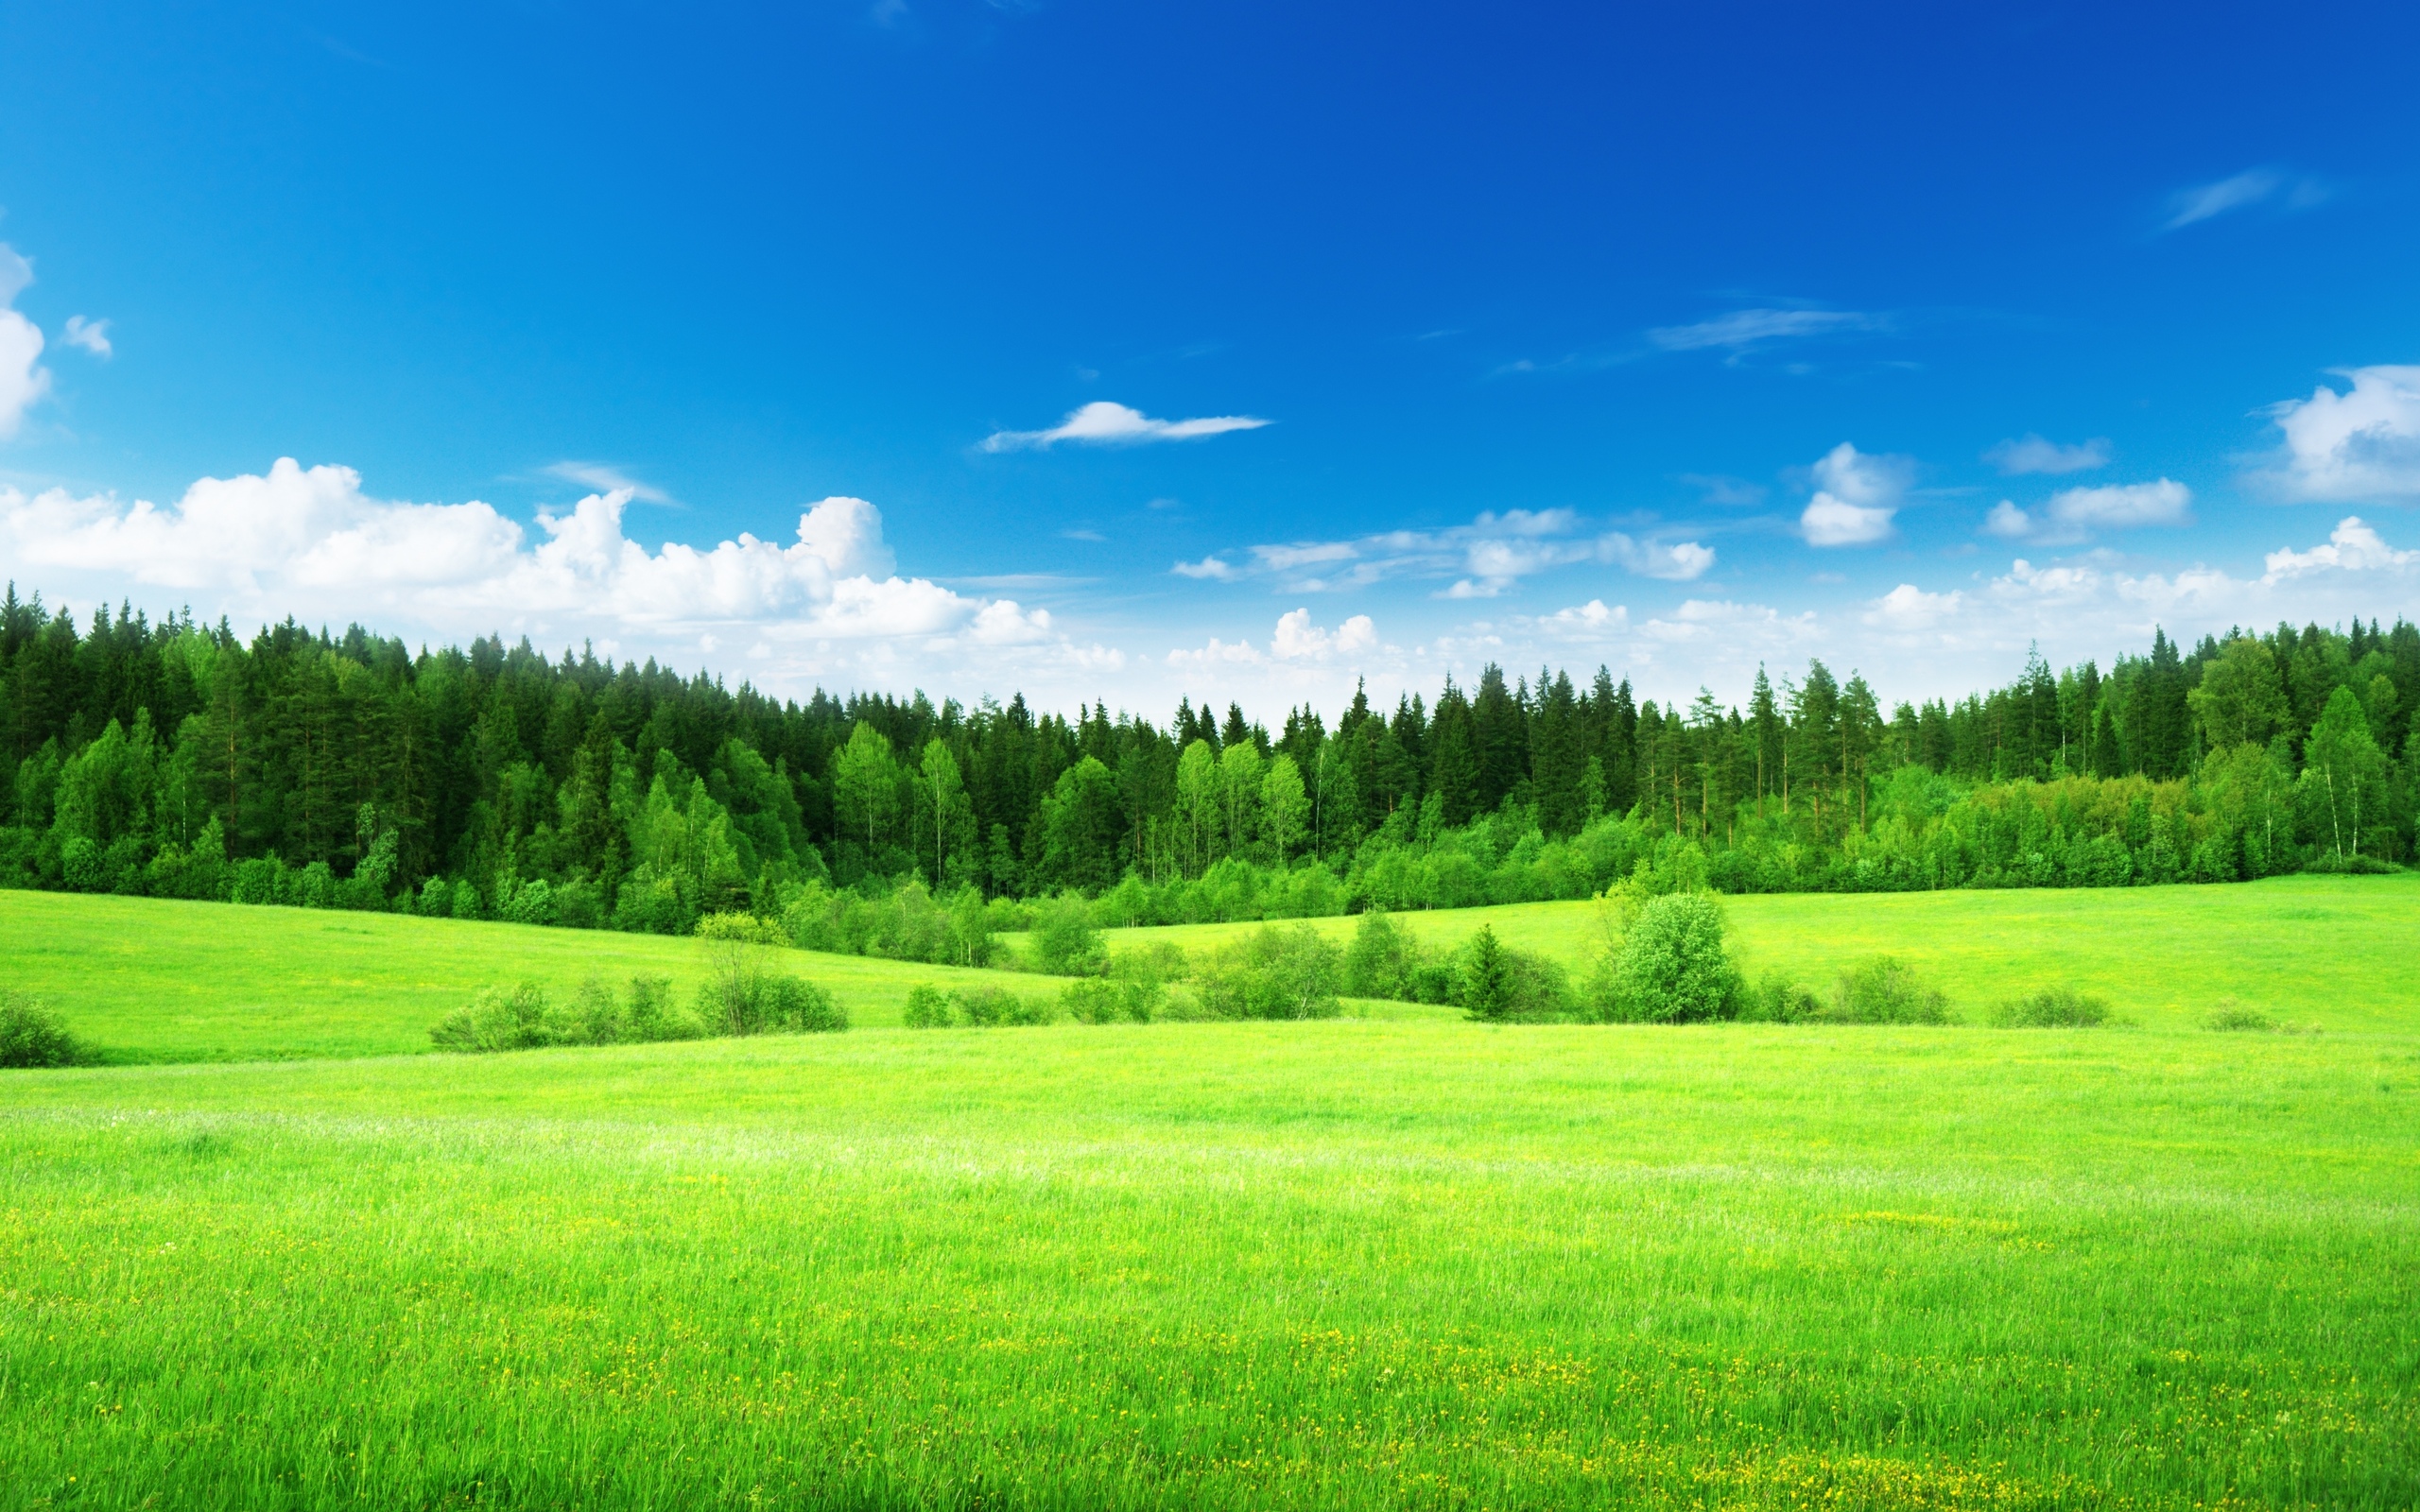 Hình nền thiên nhiên với đồng cỏ xanh thẳm, những tán cây rợp bóng mát và những đám mây trôi qua thật tuyệt vời. Cảm giác tĩnh lặng và yên bình sẽ tự nhiên tràn đầy khi bạn xem những hình nền tuyệt đẹp như thế này!